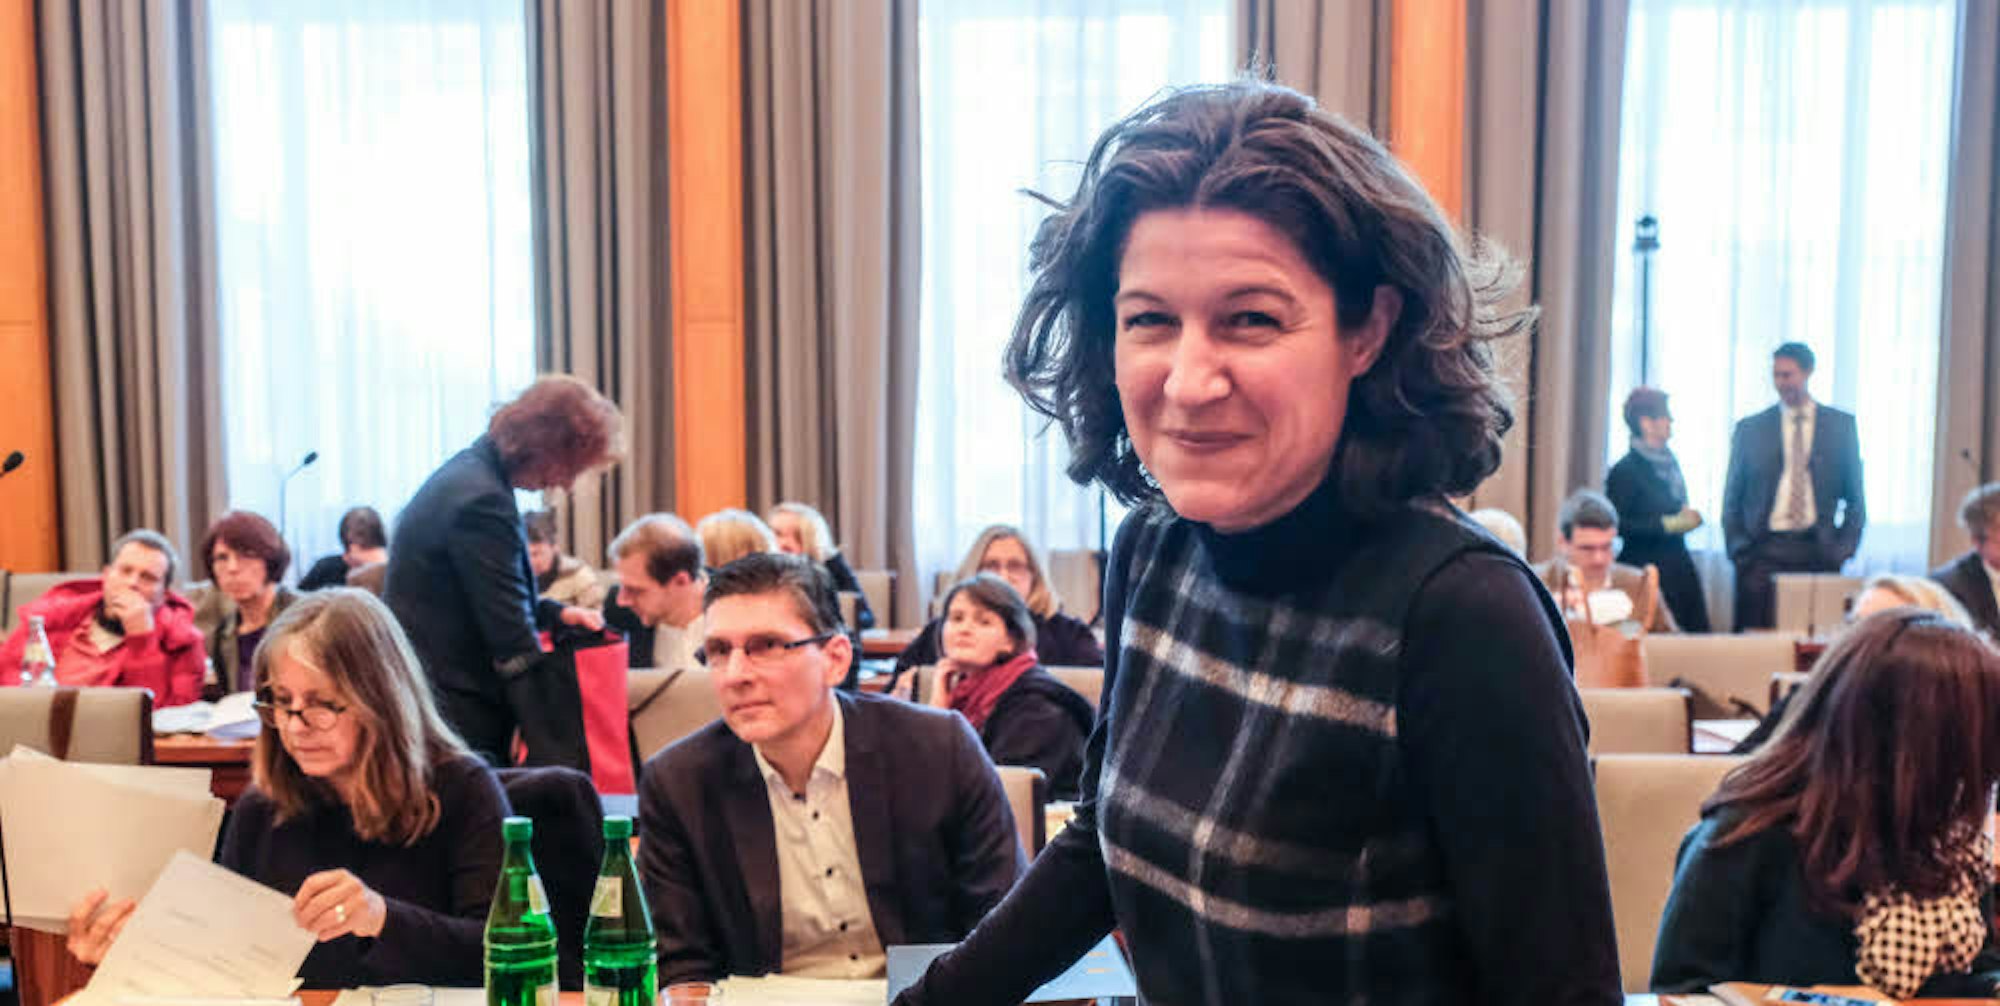 Zum letzten Mal nahm Kirsten Jahn an einer Sitzung des Stadtrats teil. Die Fraktionschefin der Grünen wechselt zum 1. März als Geschäftsführerin zur Metropolregion Rheinland.